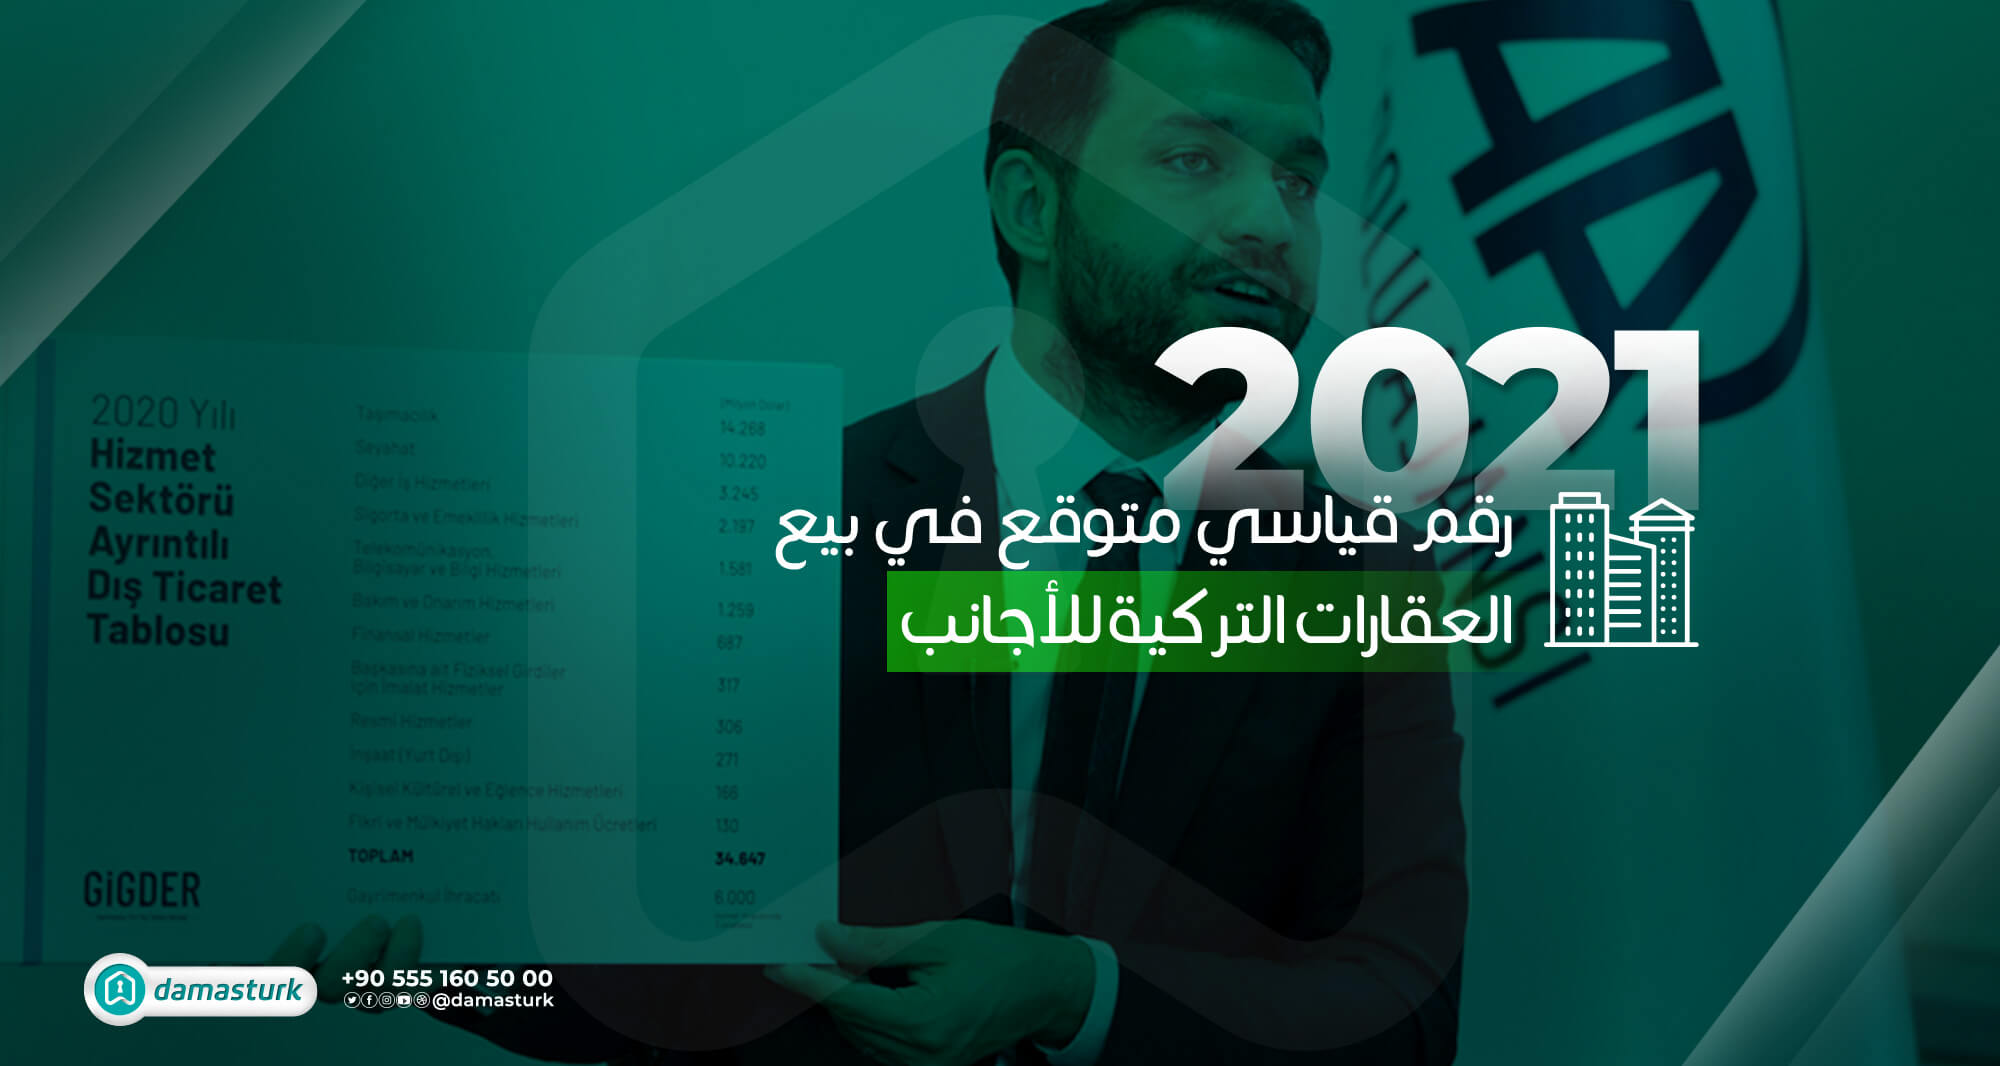 رقم قياسي متوقع في العام 2021 في بيع العقارات التركية للأجانب